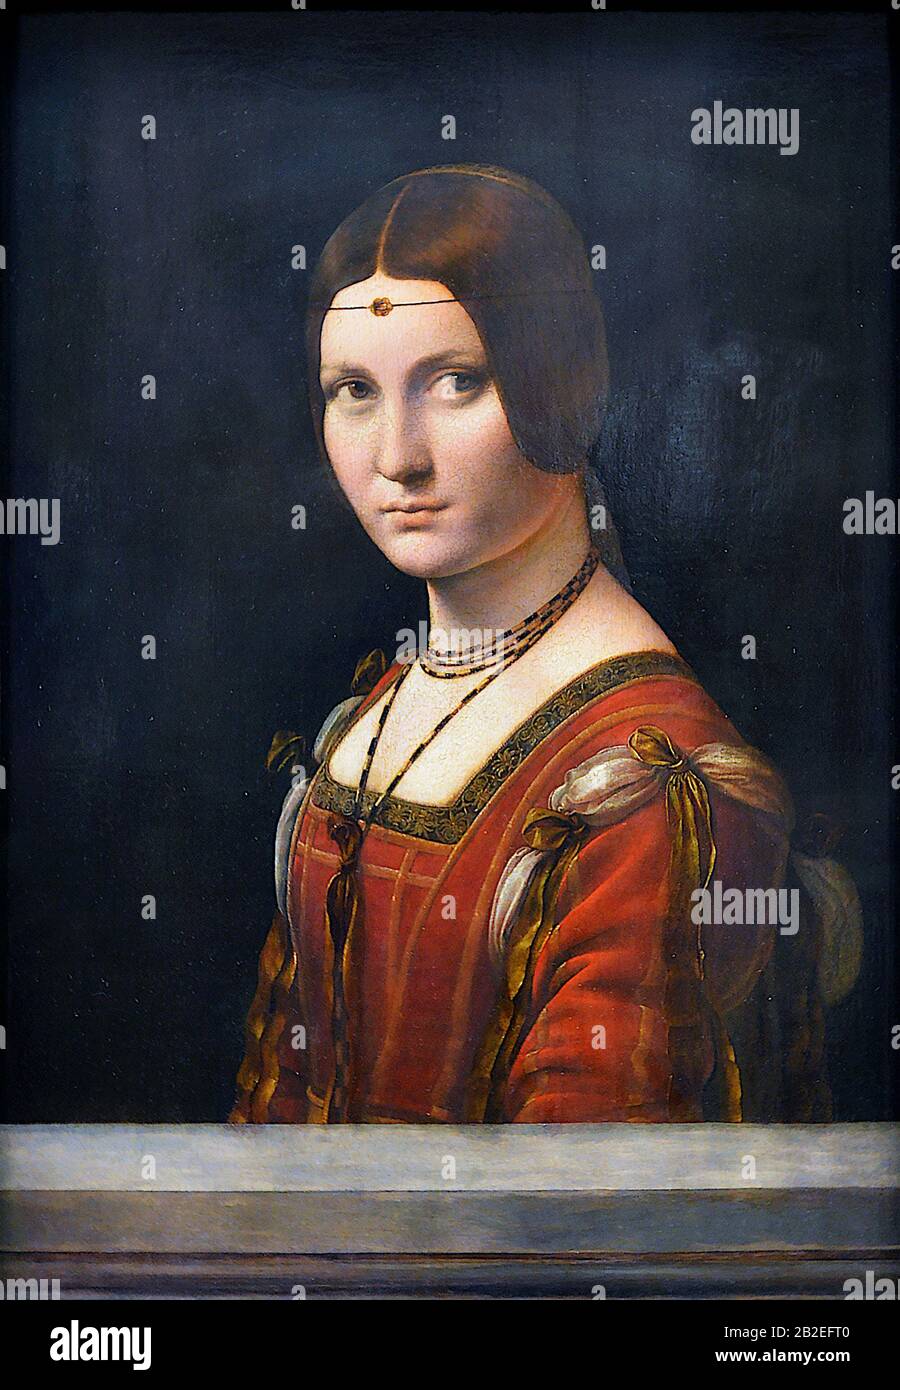 La belle ferronnière (Porträt einer Unbekannten Frau) (ca. 1490) von Leonardo da Vinci - Sehr hochwertige und hochauflösende Bilder Stockfoto